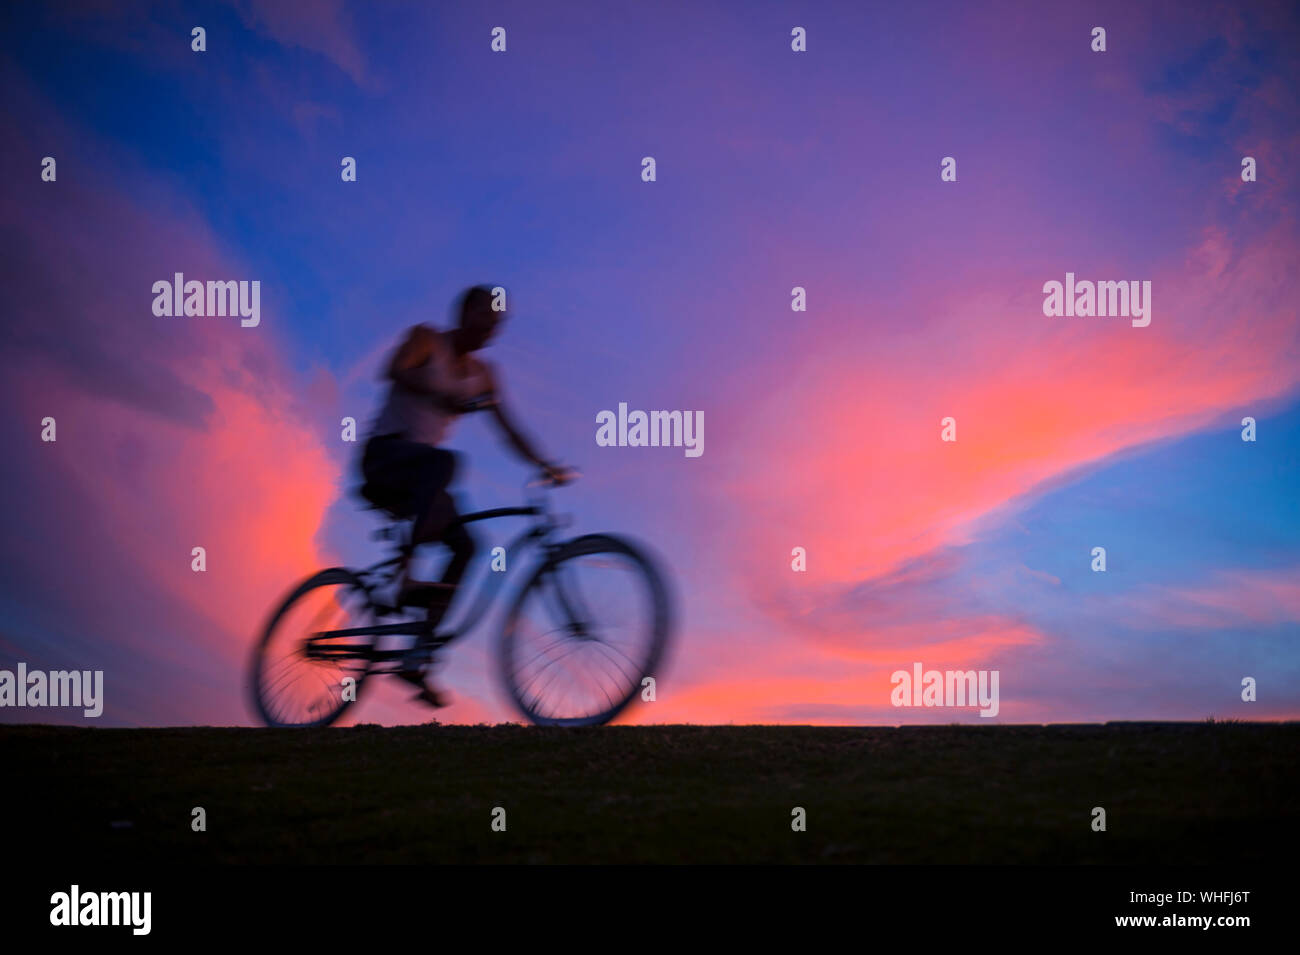 Defocalizzazione abstract vista al tramonto di un irriconoscibile silhouette di un uomo in bicicletta in motion blur contro il cielo colorato Foto Stock